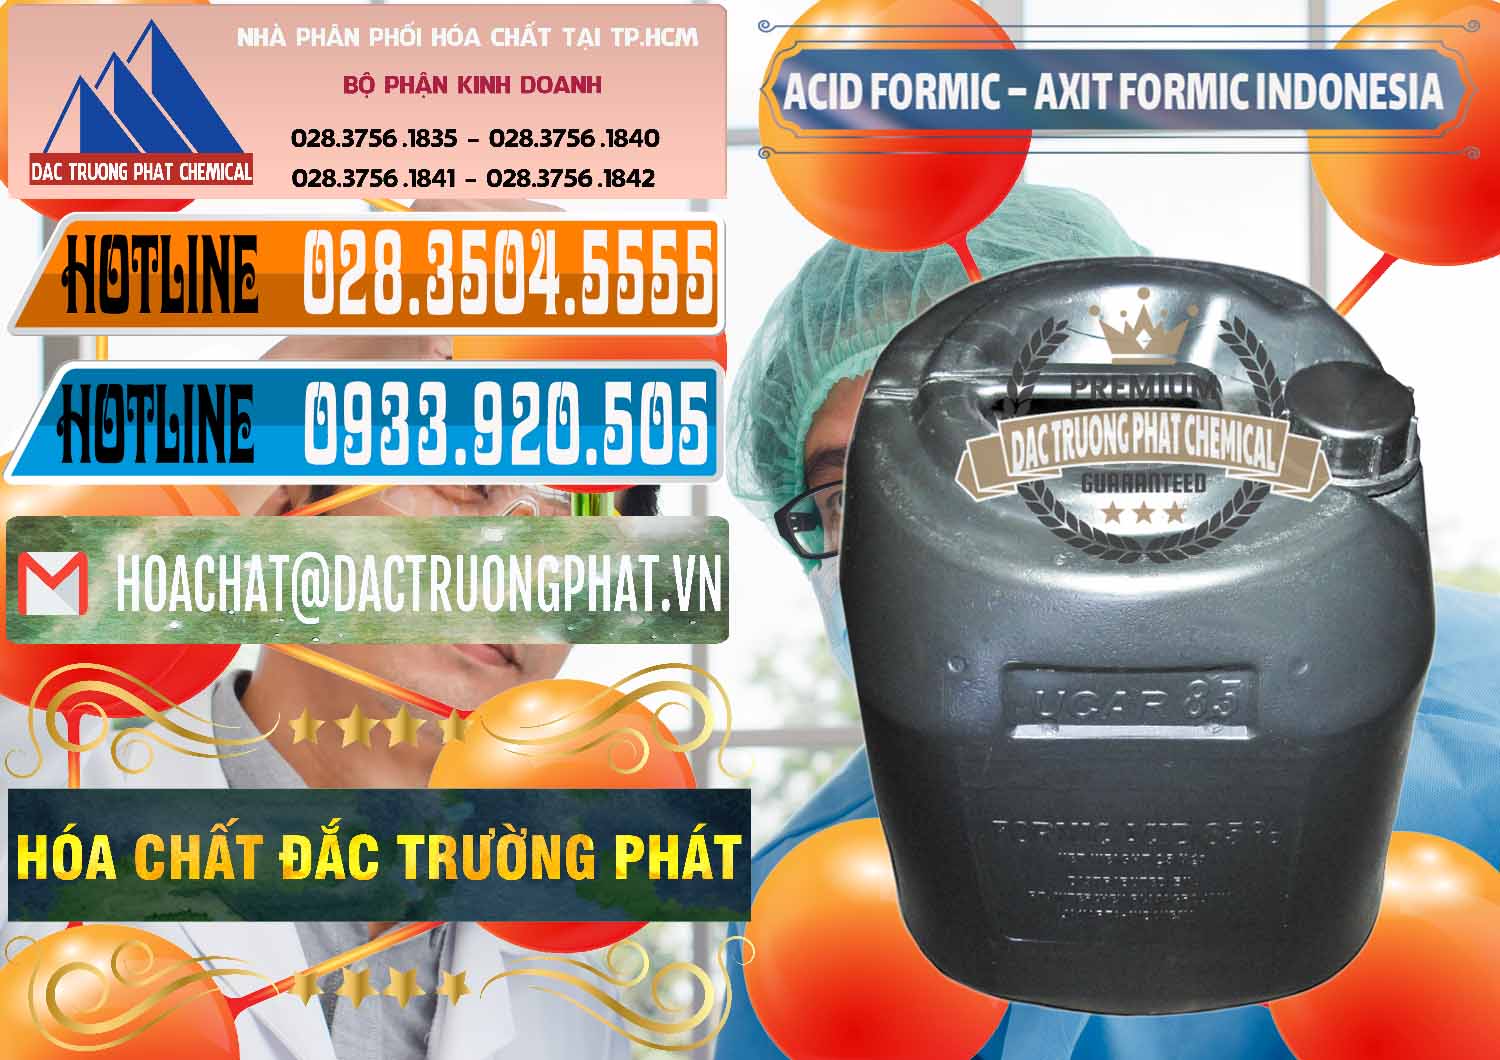 Bán & cung ứng Acid Formic - Axit Formic Indonesia - 0026 - Chuyên cung cấp ( phân phối ) hóa chất tại TP.HCM - stmp.net